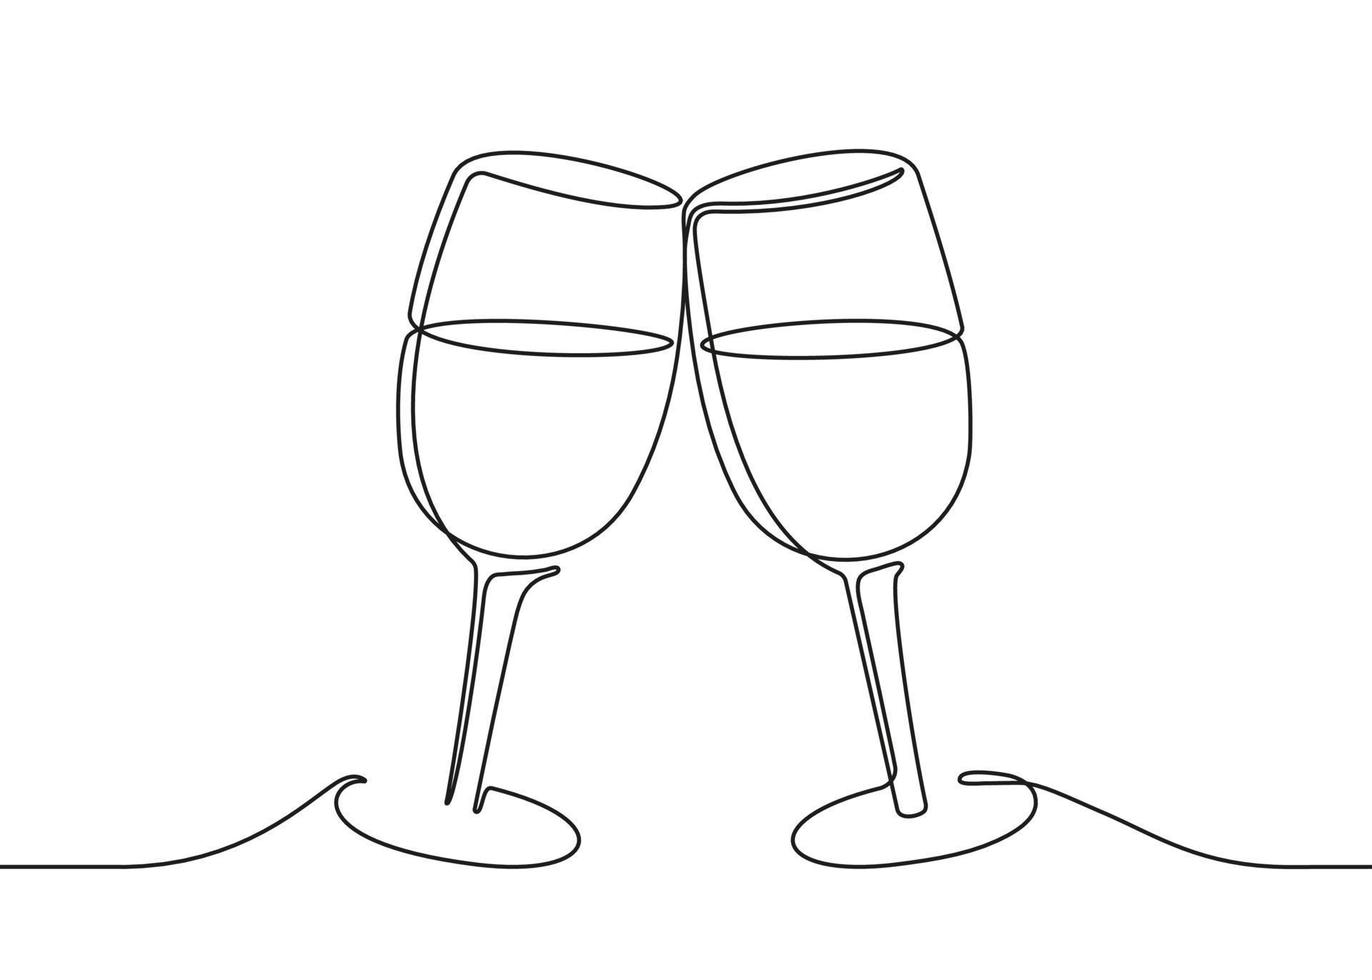 Zwei Weingläser klirren, durchgehende schwarze Strichzeichnung. Vektor-Illustration vektor